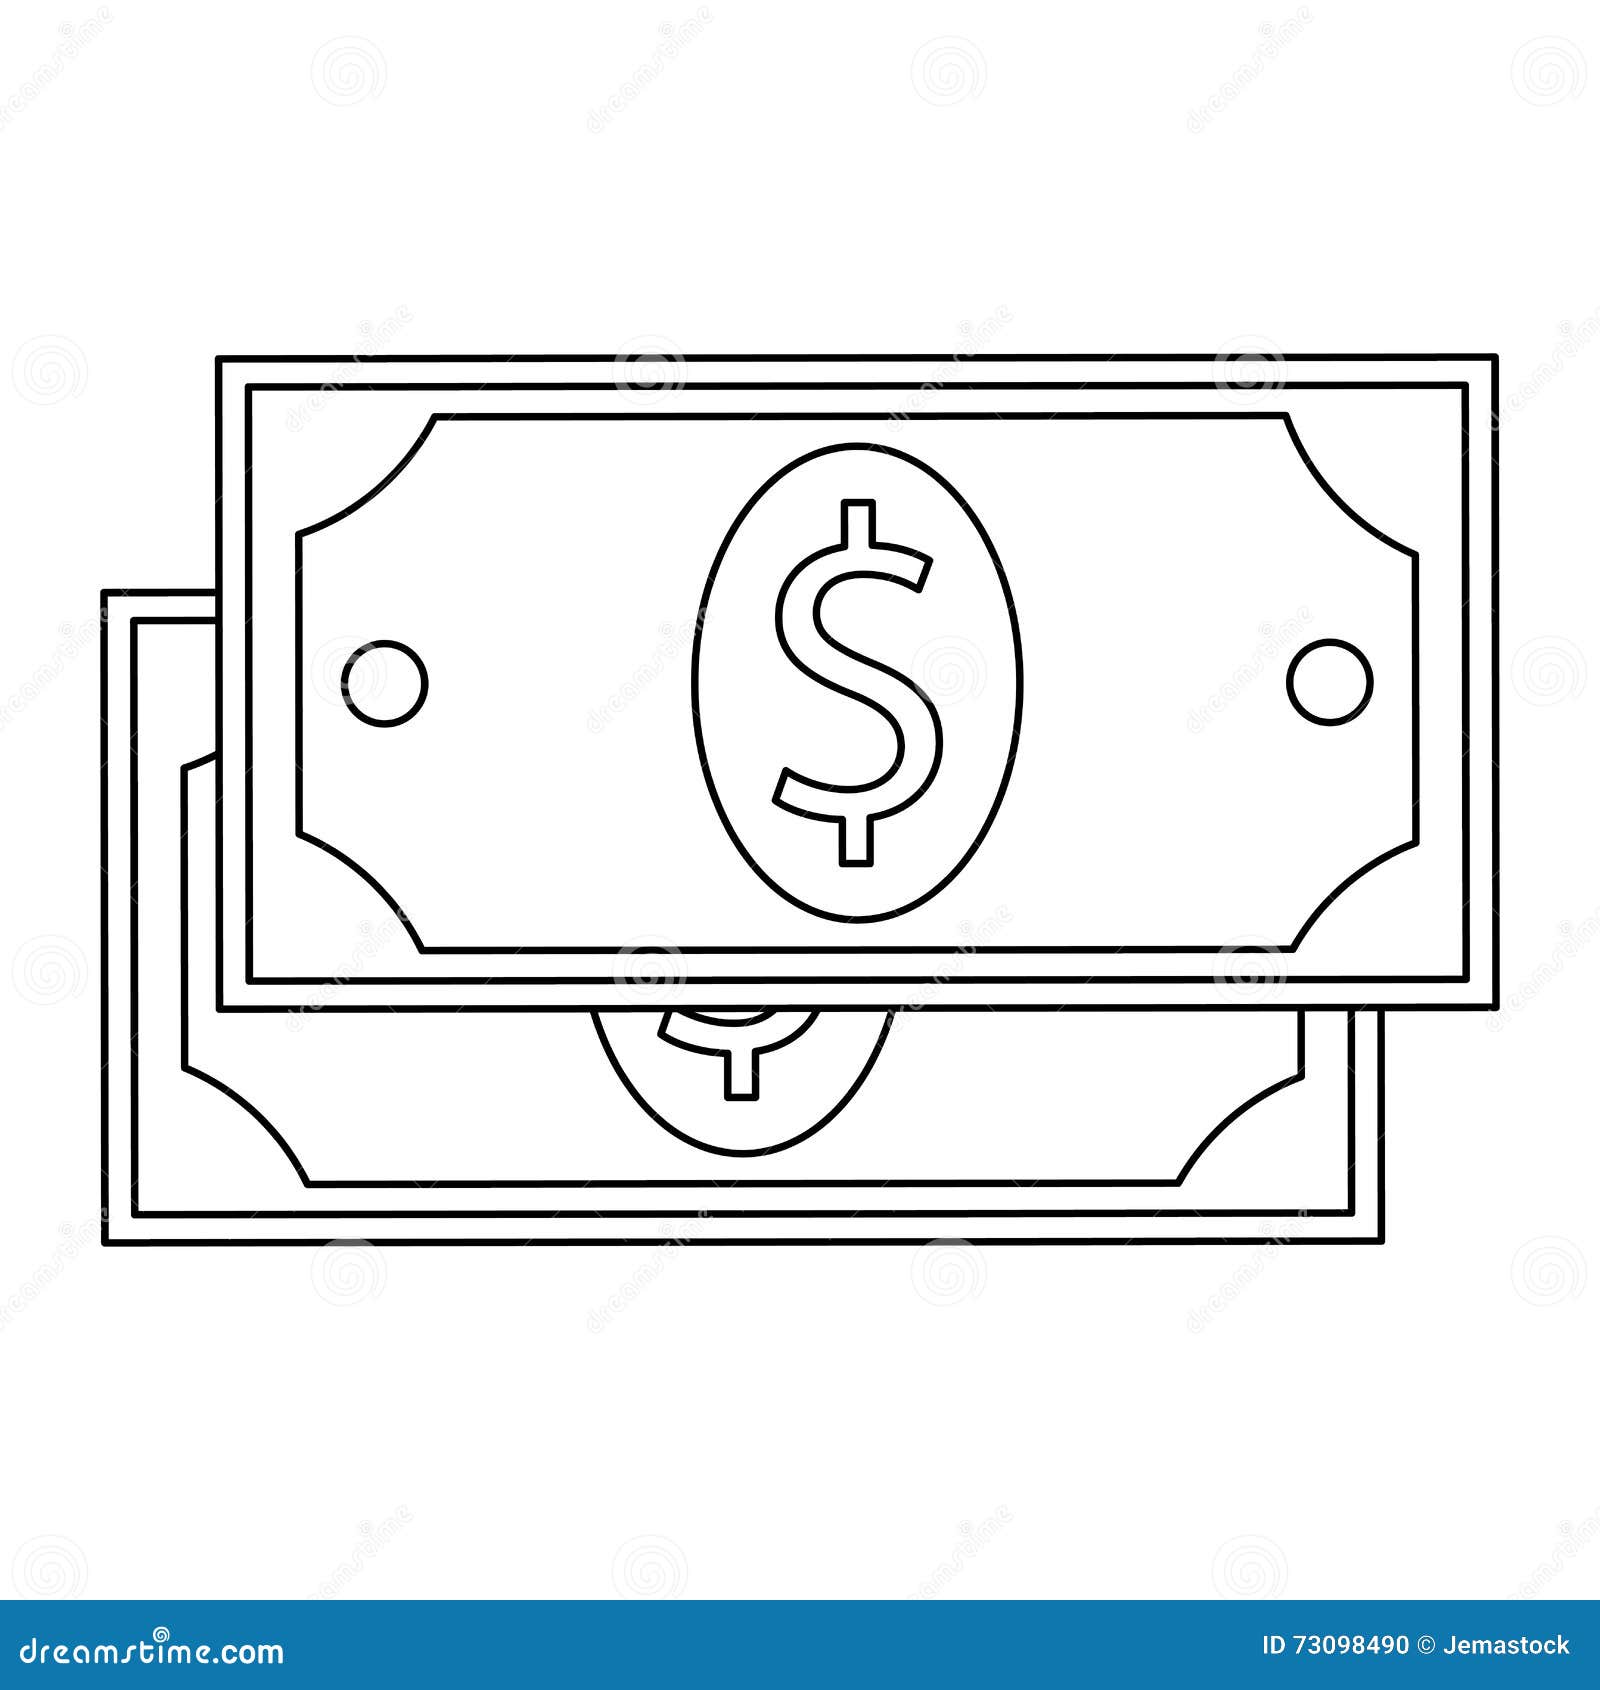 Dollar Bill , Vector Illustration Stock Illustration - Illustration of ...